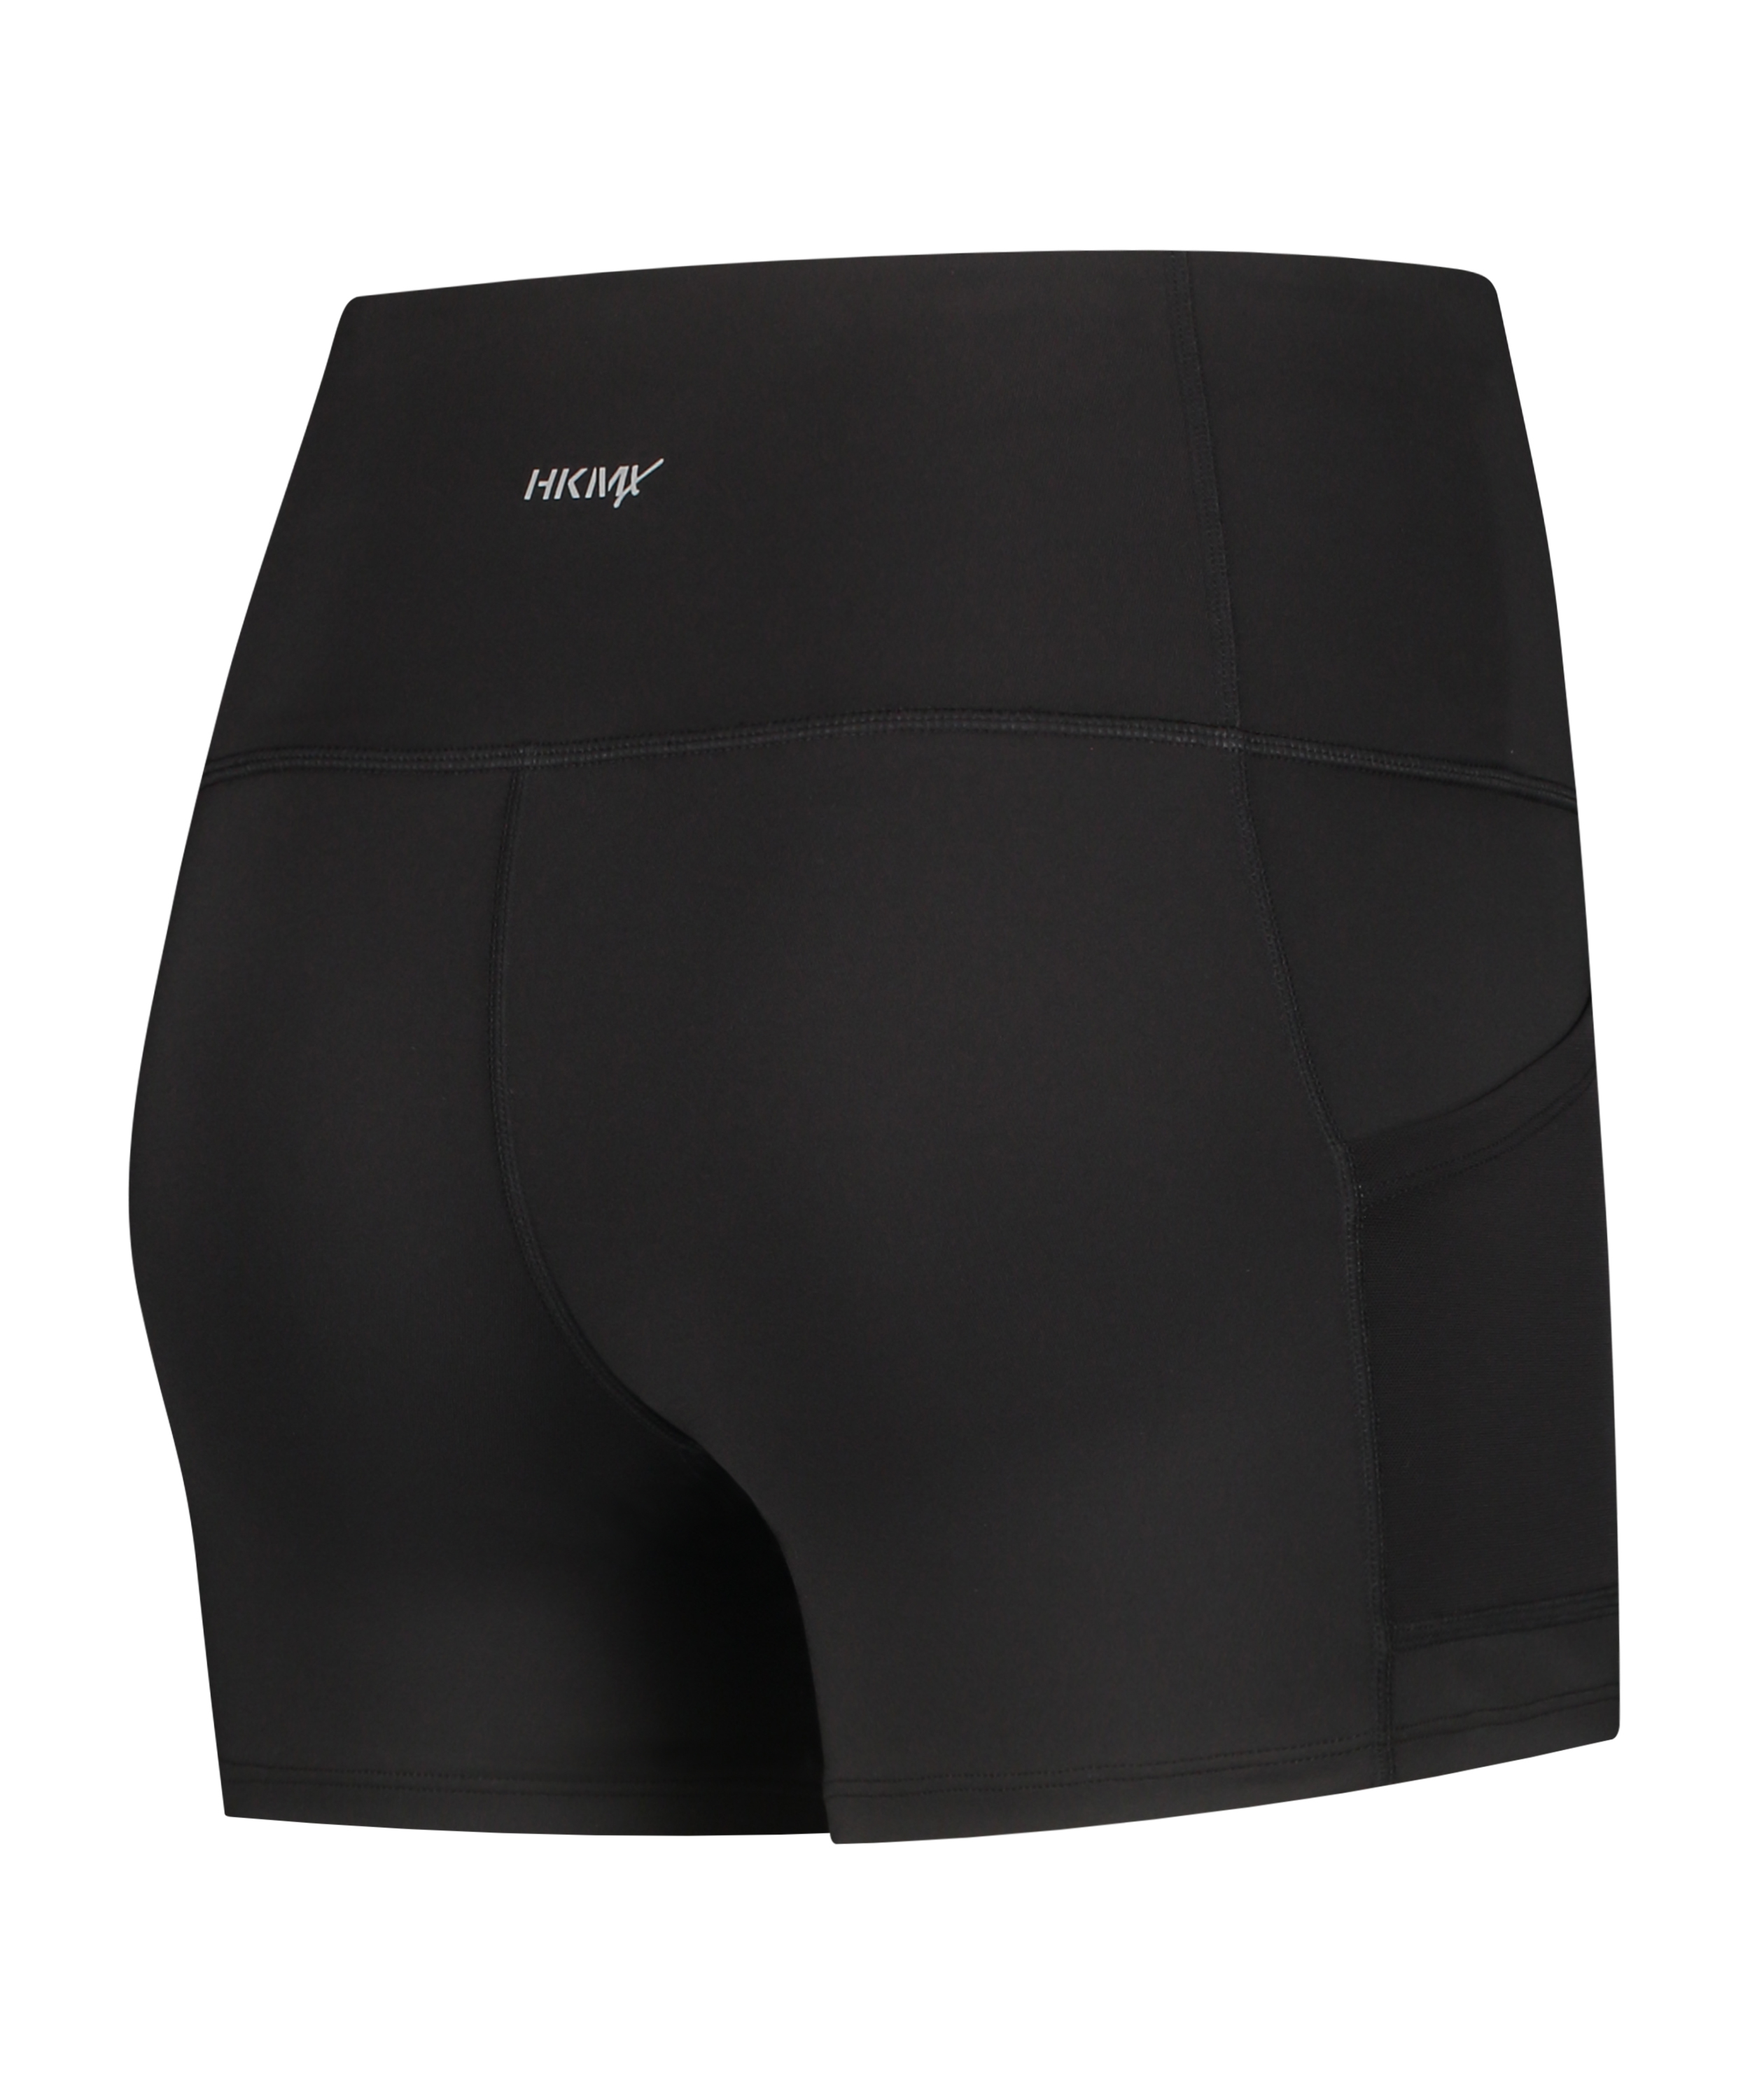 HKMX High waist shorts Oh My Squat, Black, main